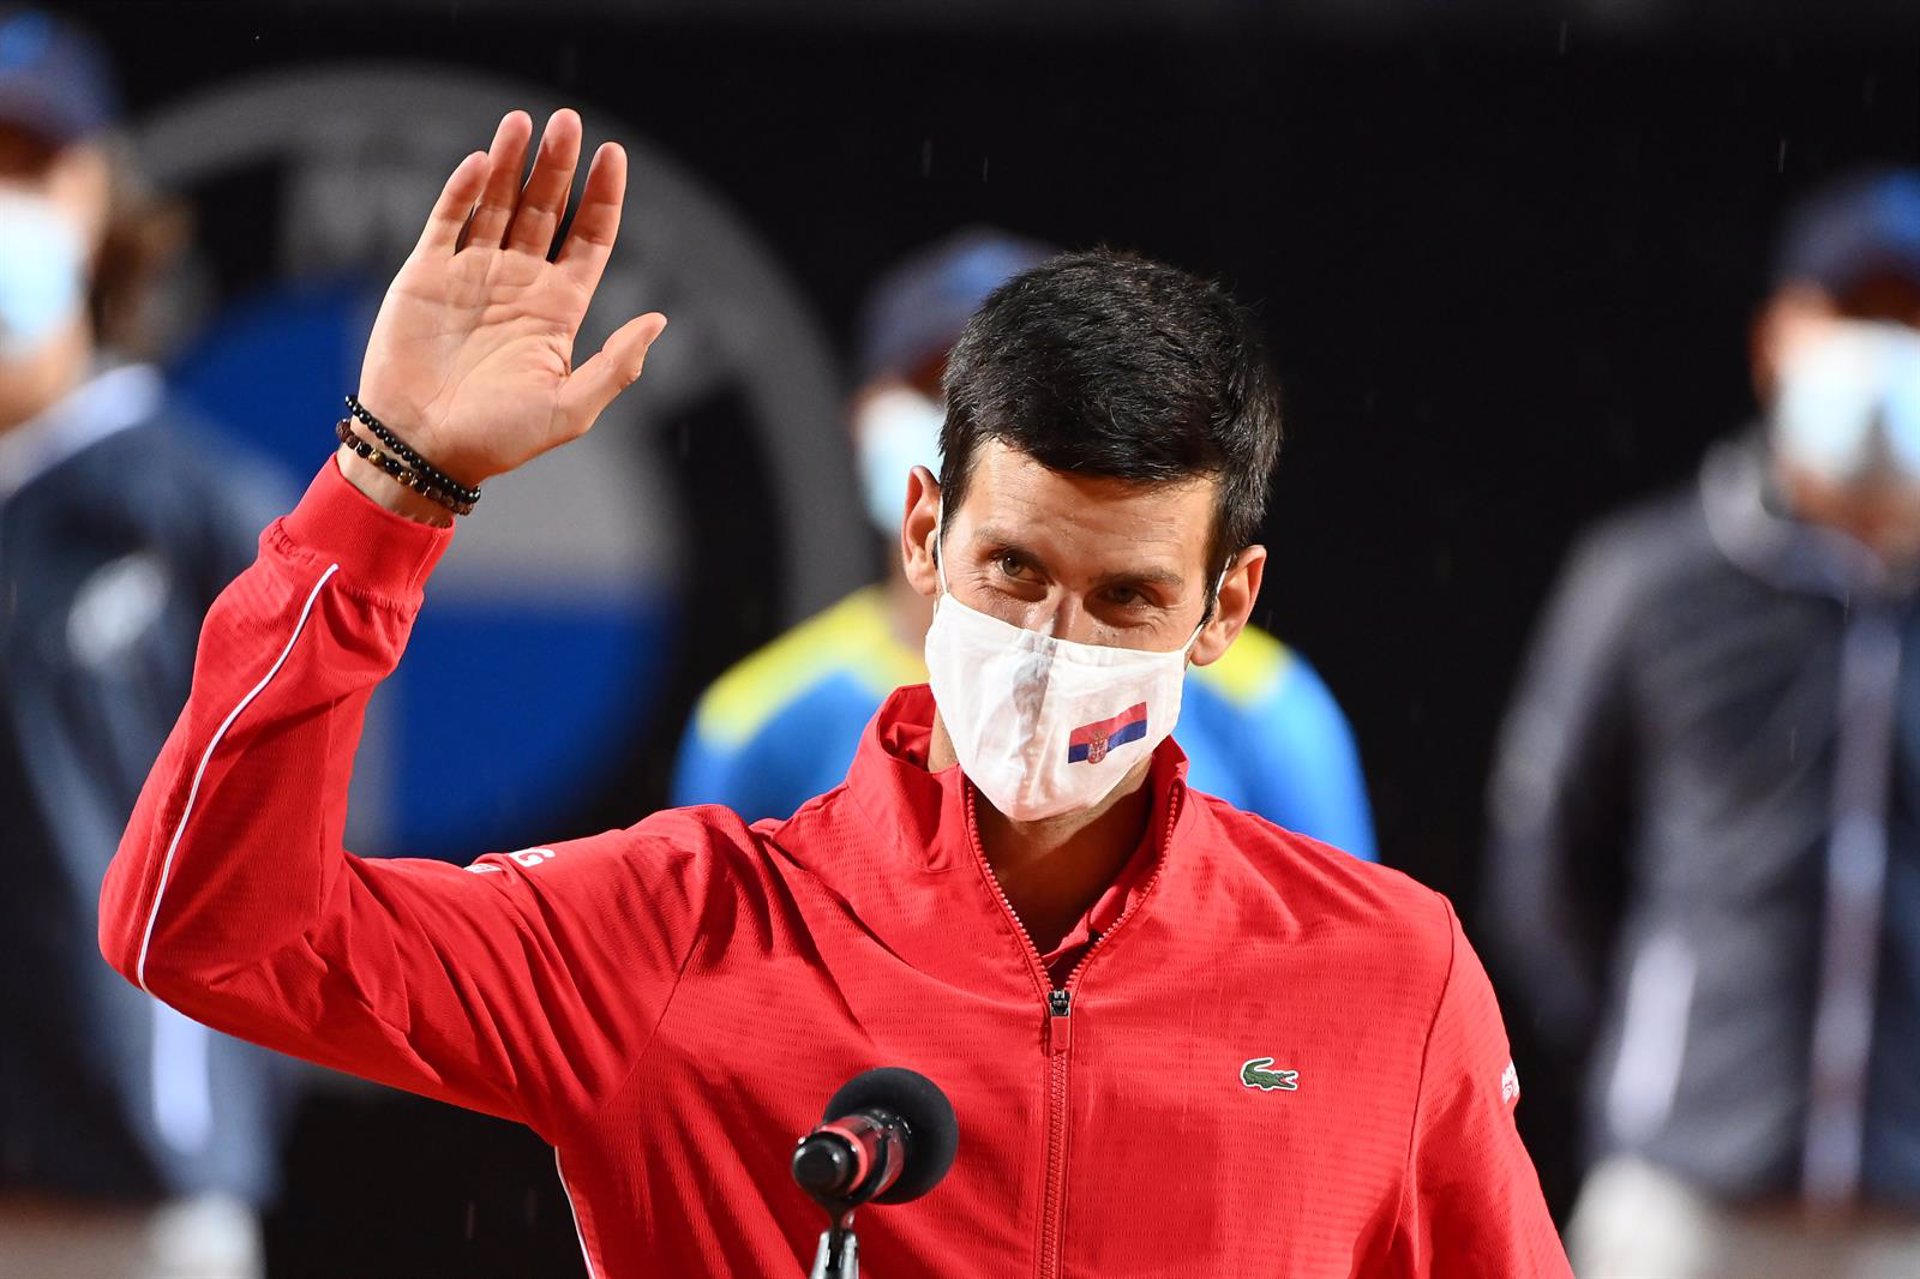 El Open de Australia confirma la presencia de Djokovic pese a las dudas sobre si está vacunado